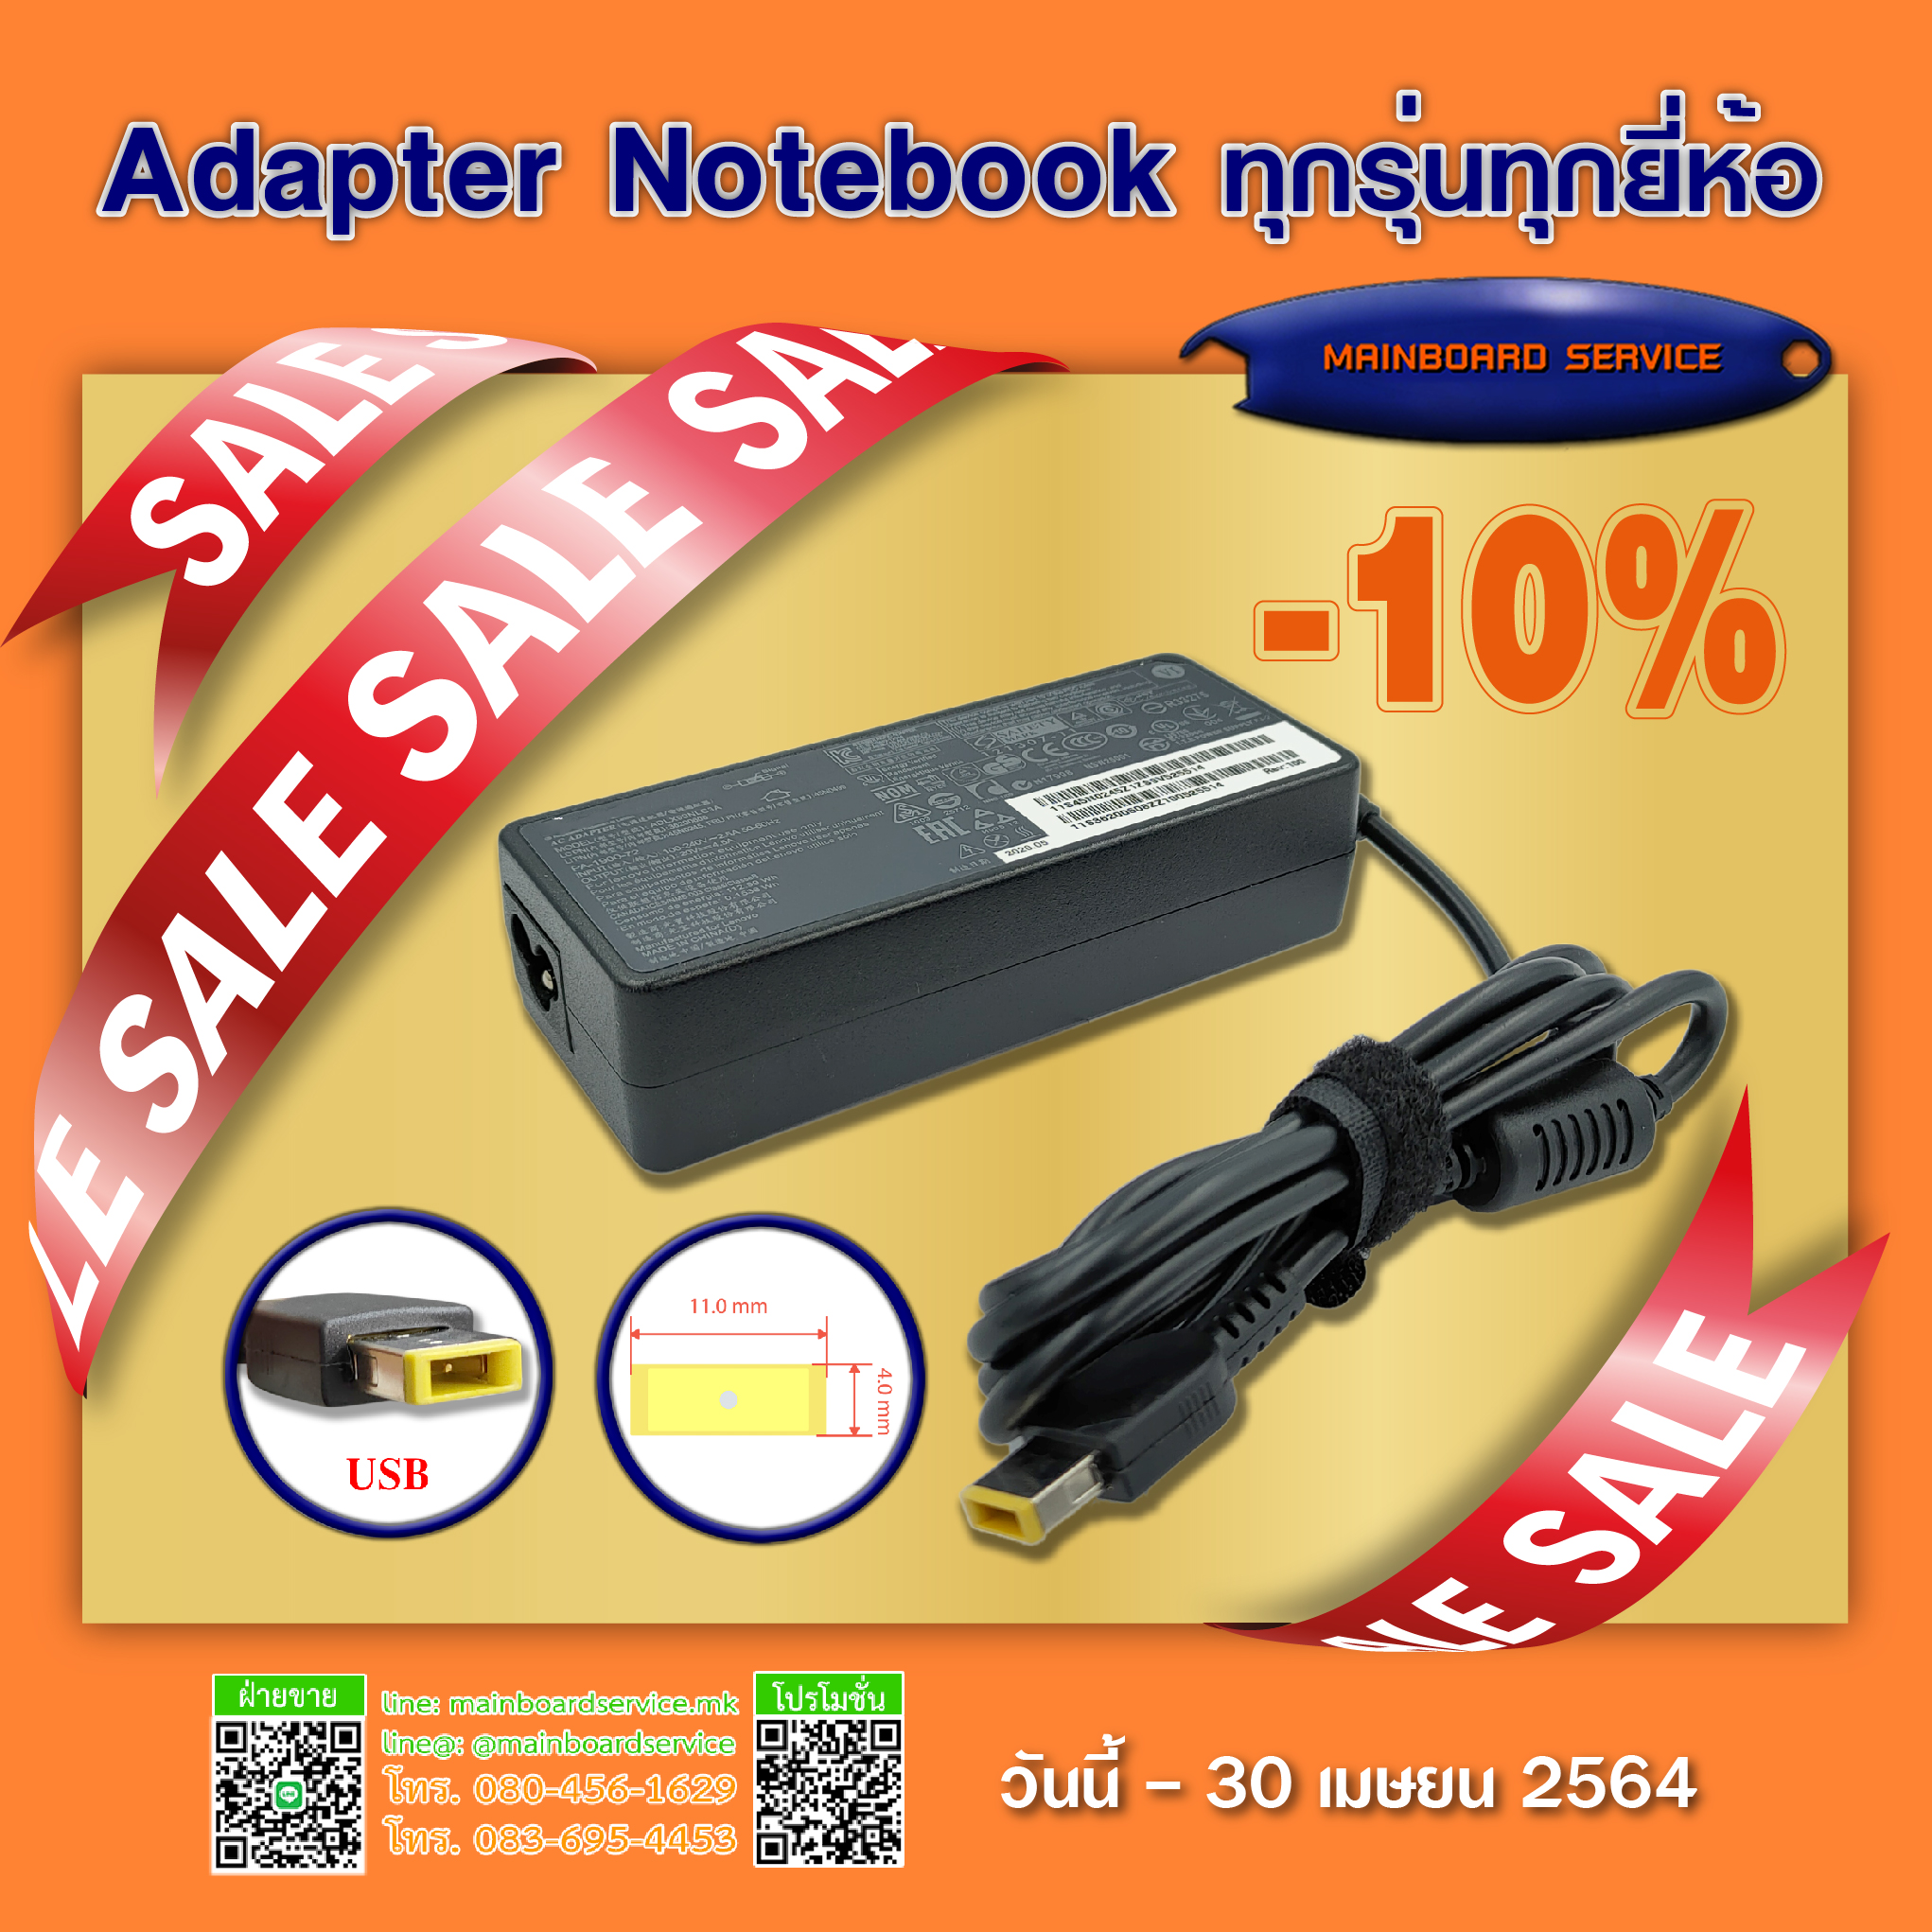 Adapter Notebook ทุกรุ่นทุกยี่ห้อลด 10%